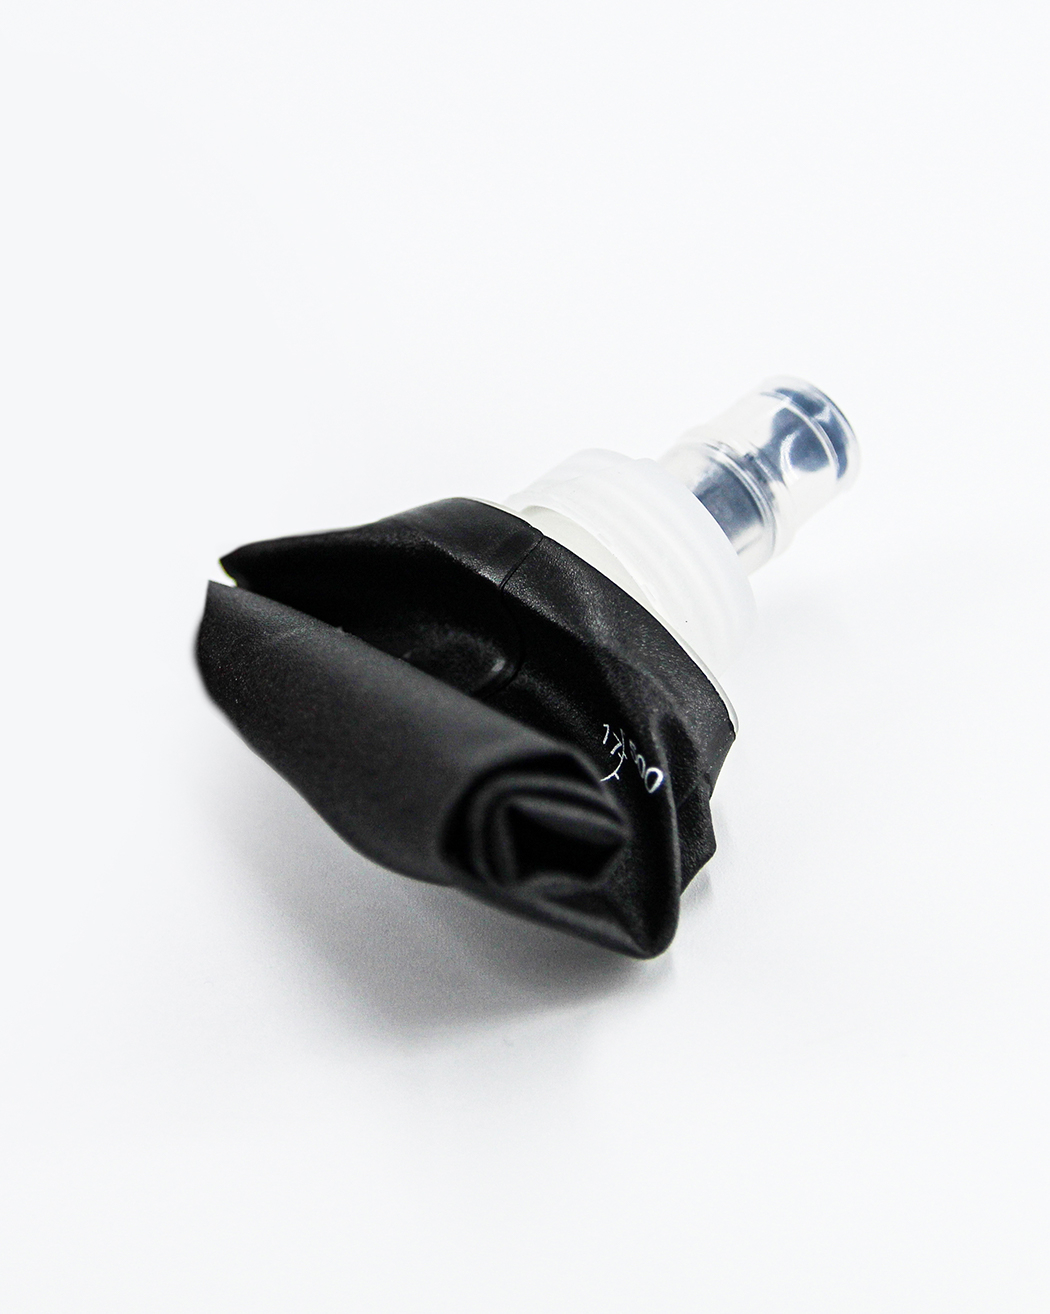 Běžecká sportovní láhev soft flask Black 500 ml